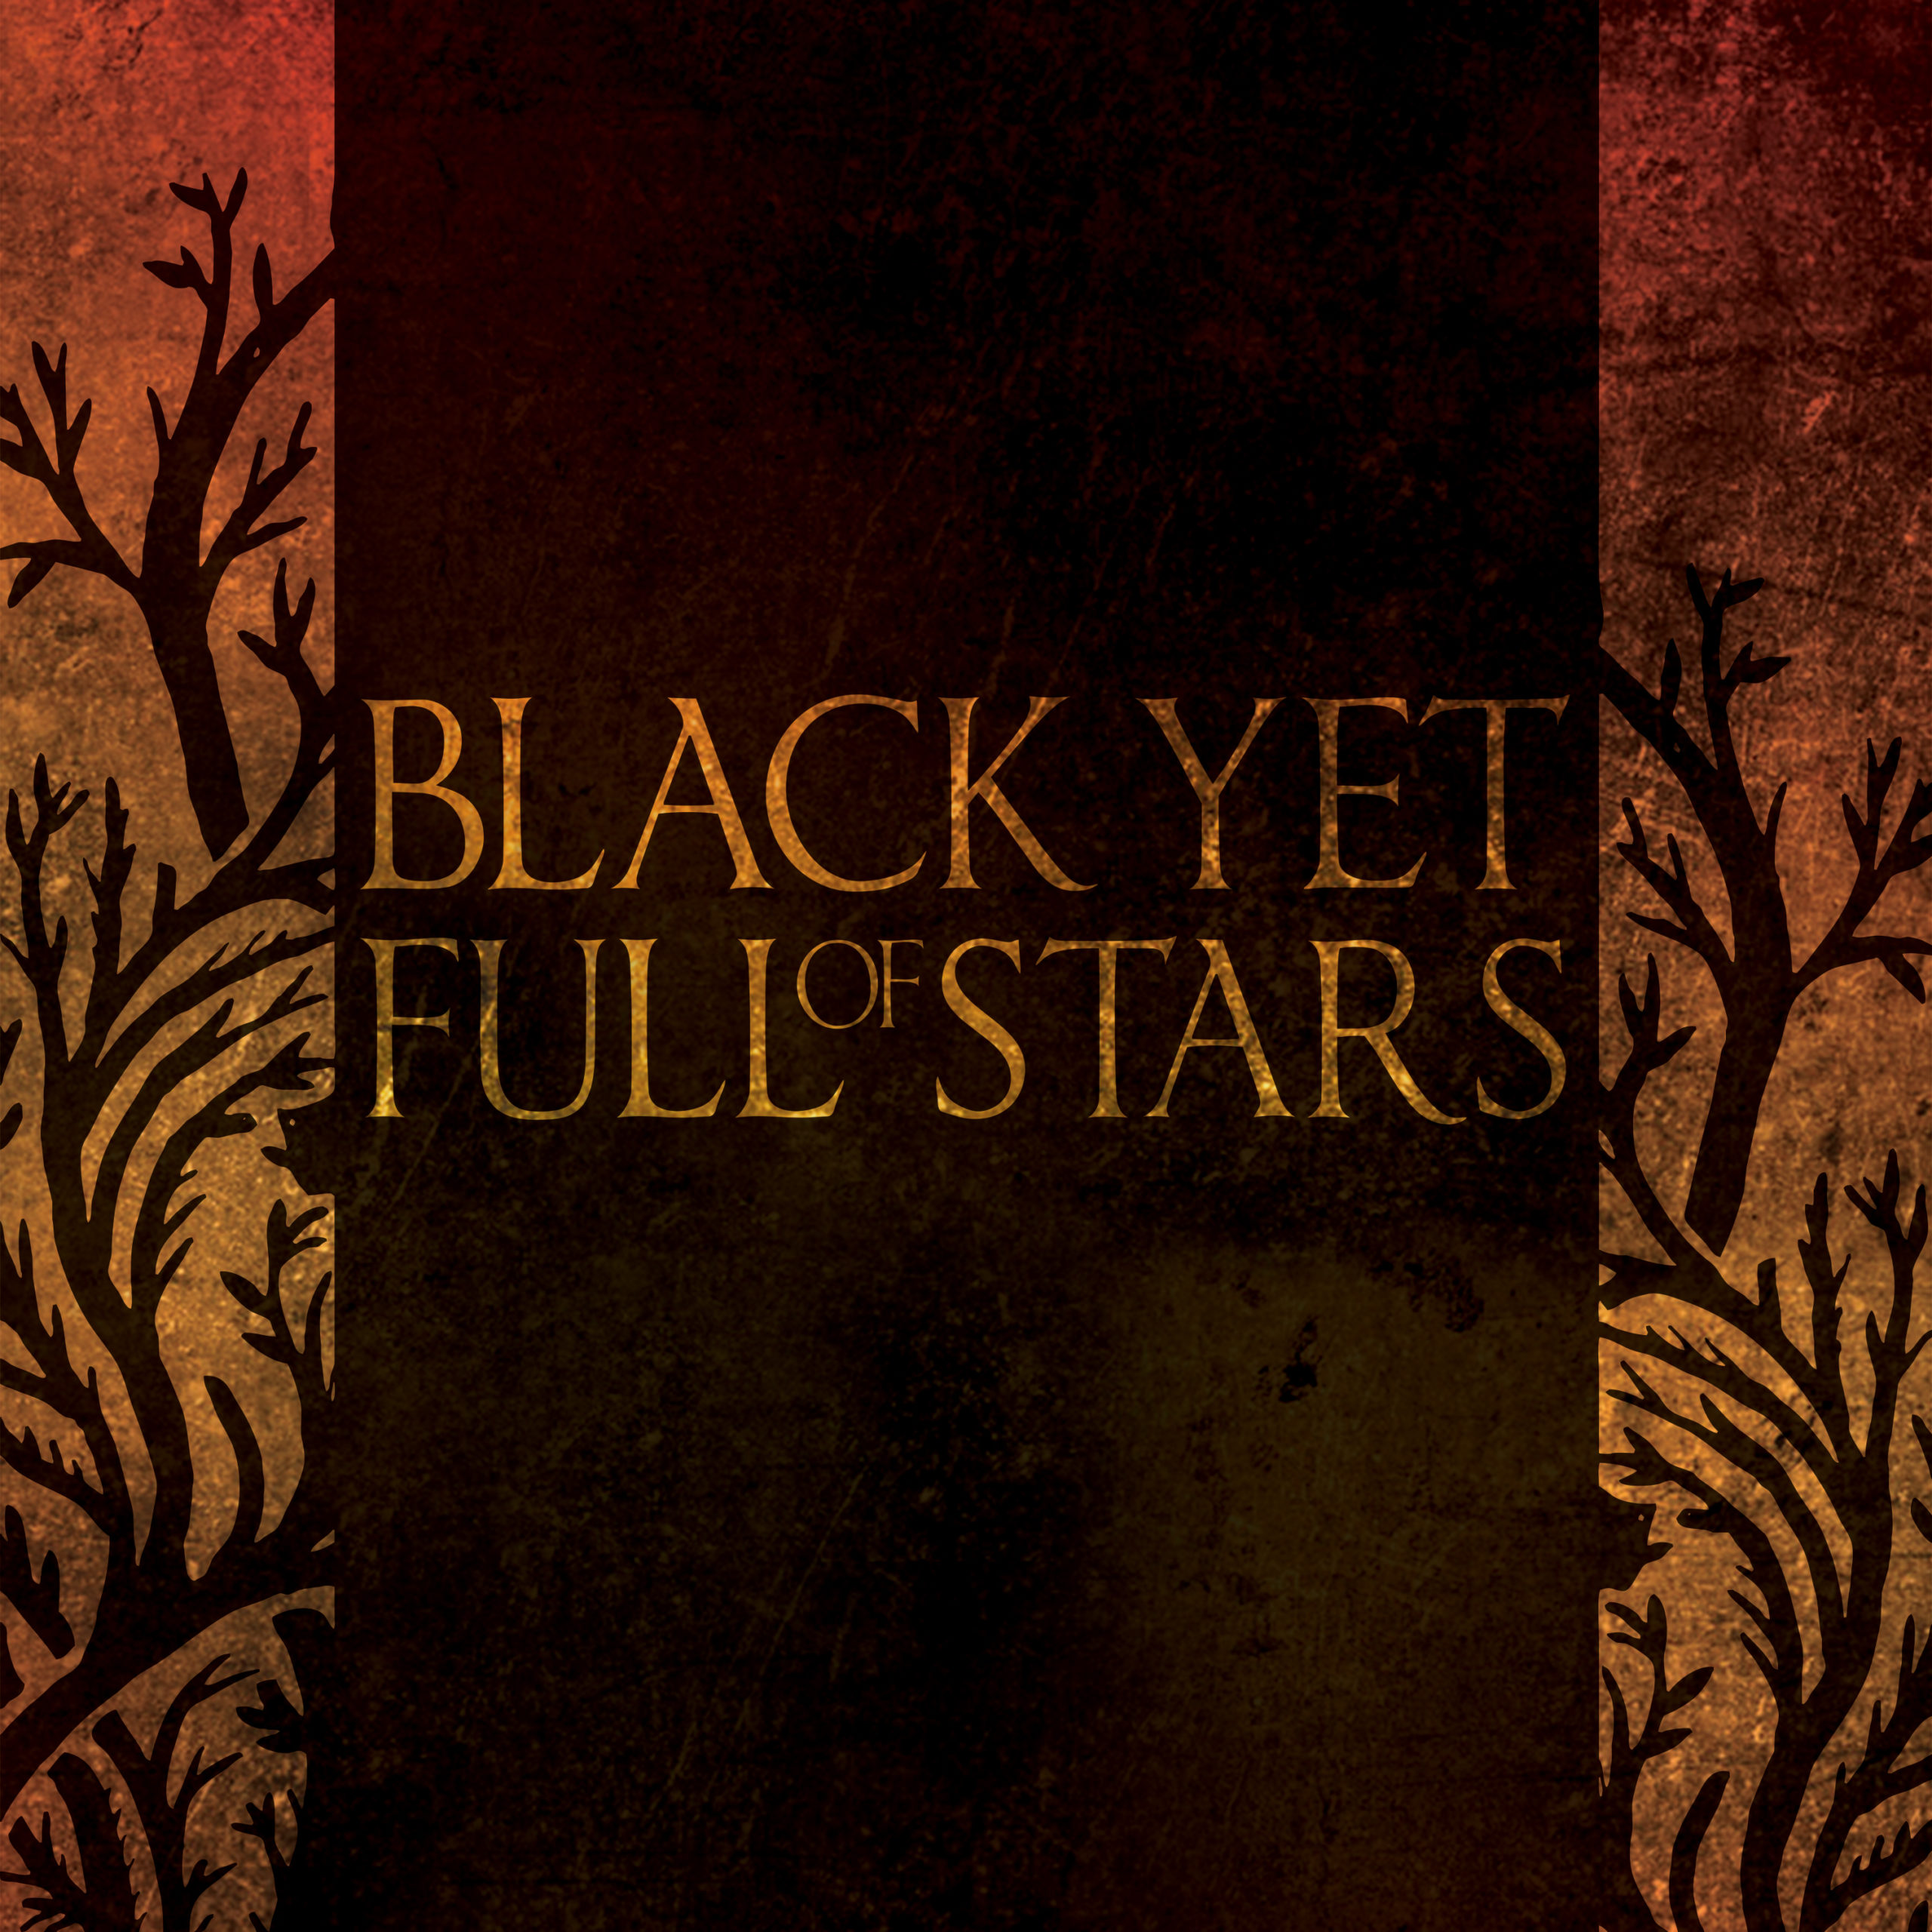 Black Yet Full of Stars